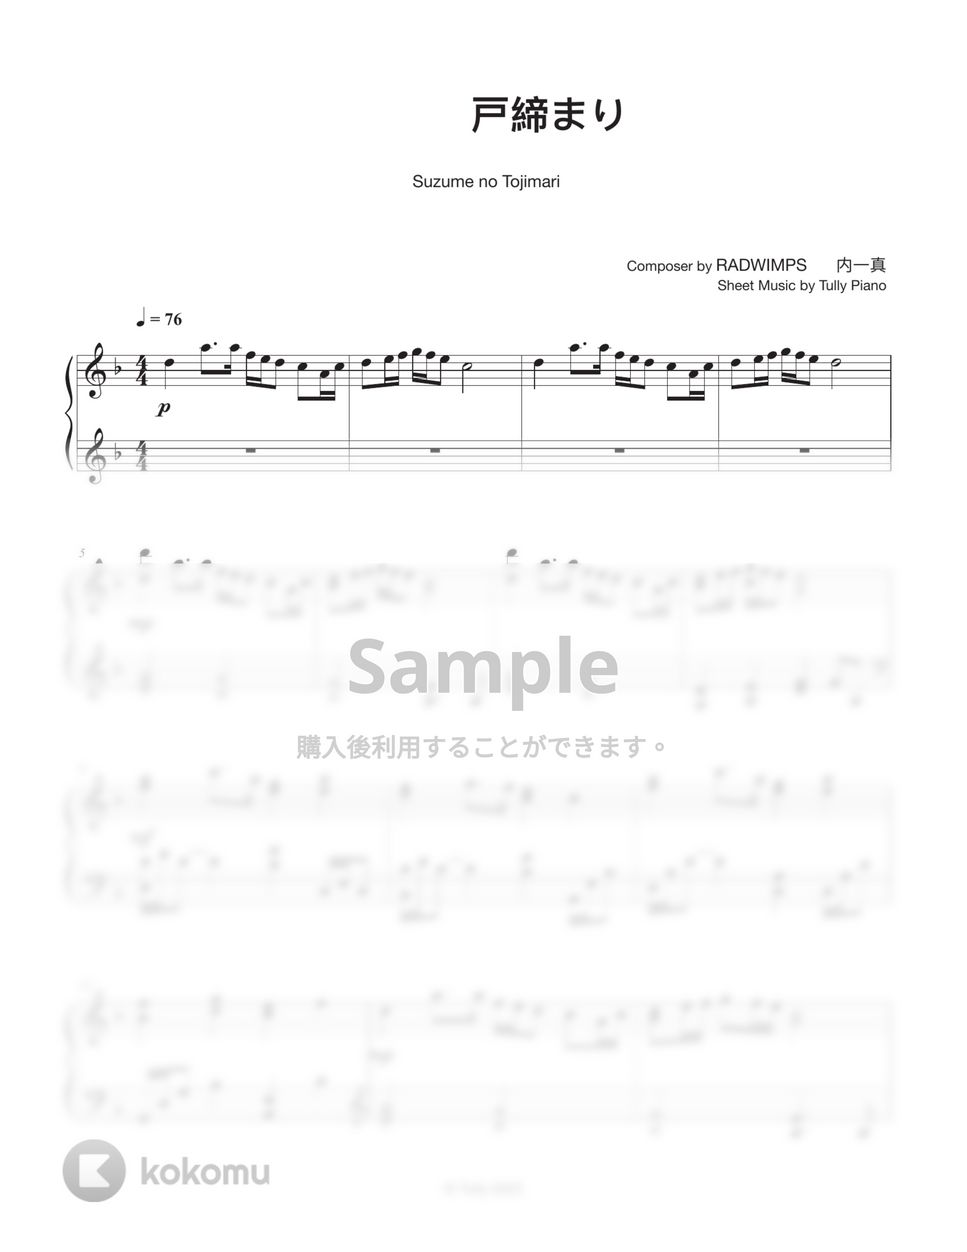 RADWIMPS - すずめの戸締まり (Full ver.) by Tully Piano